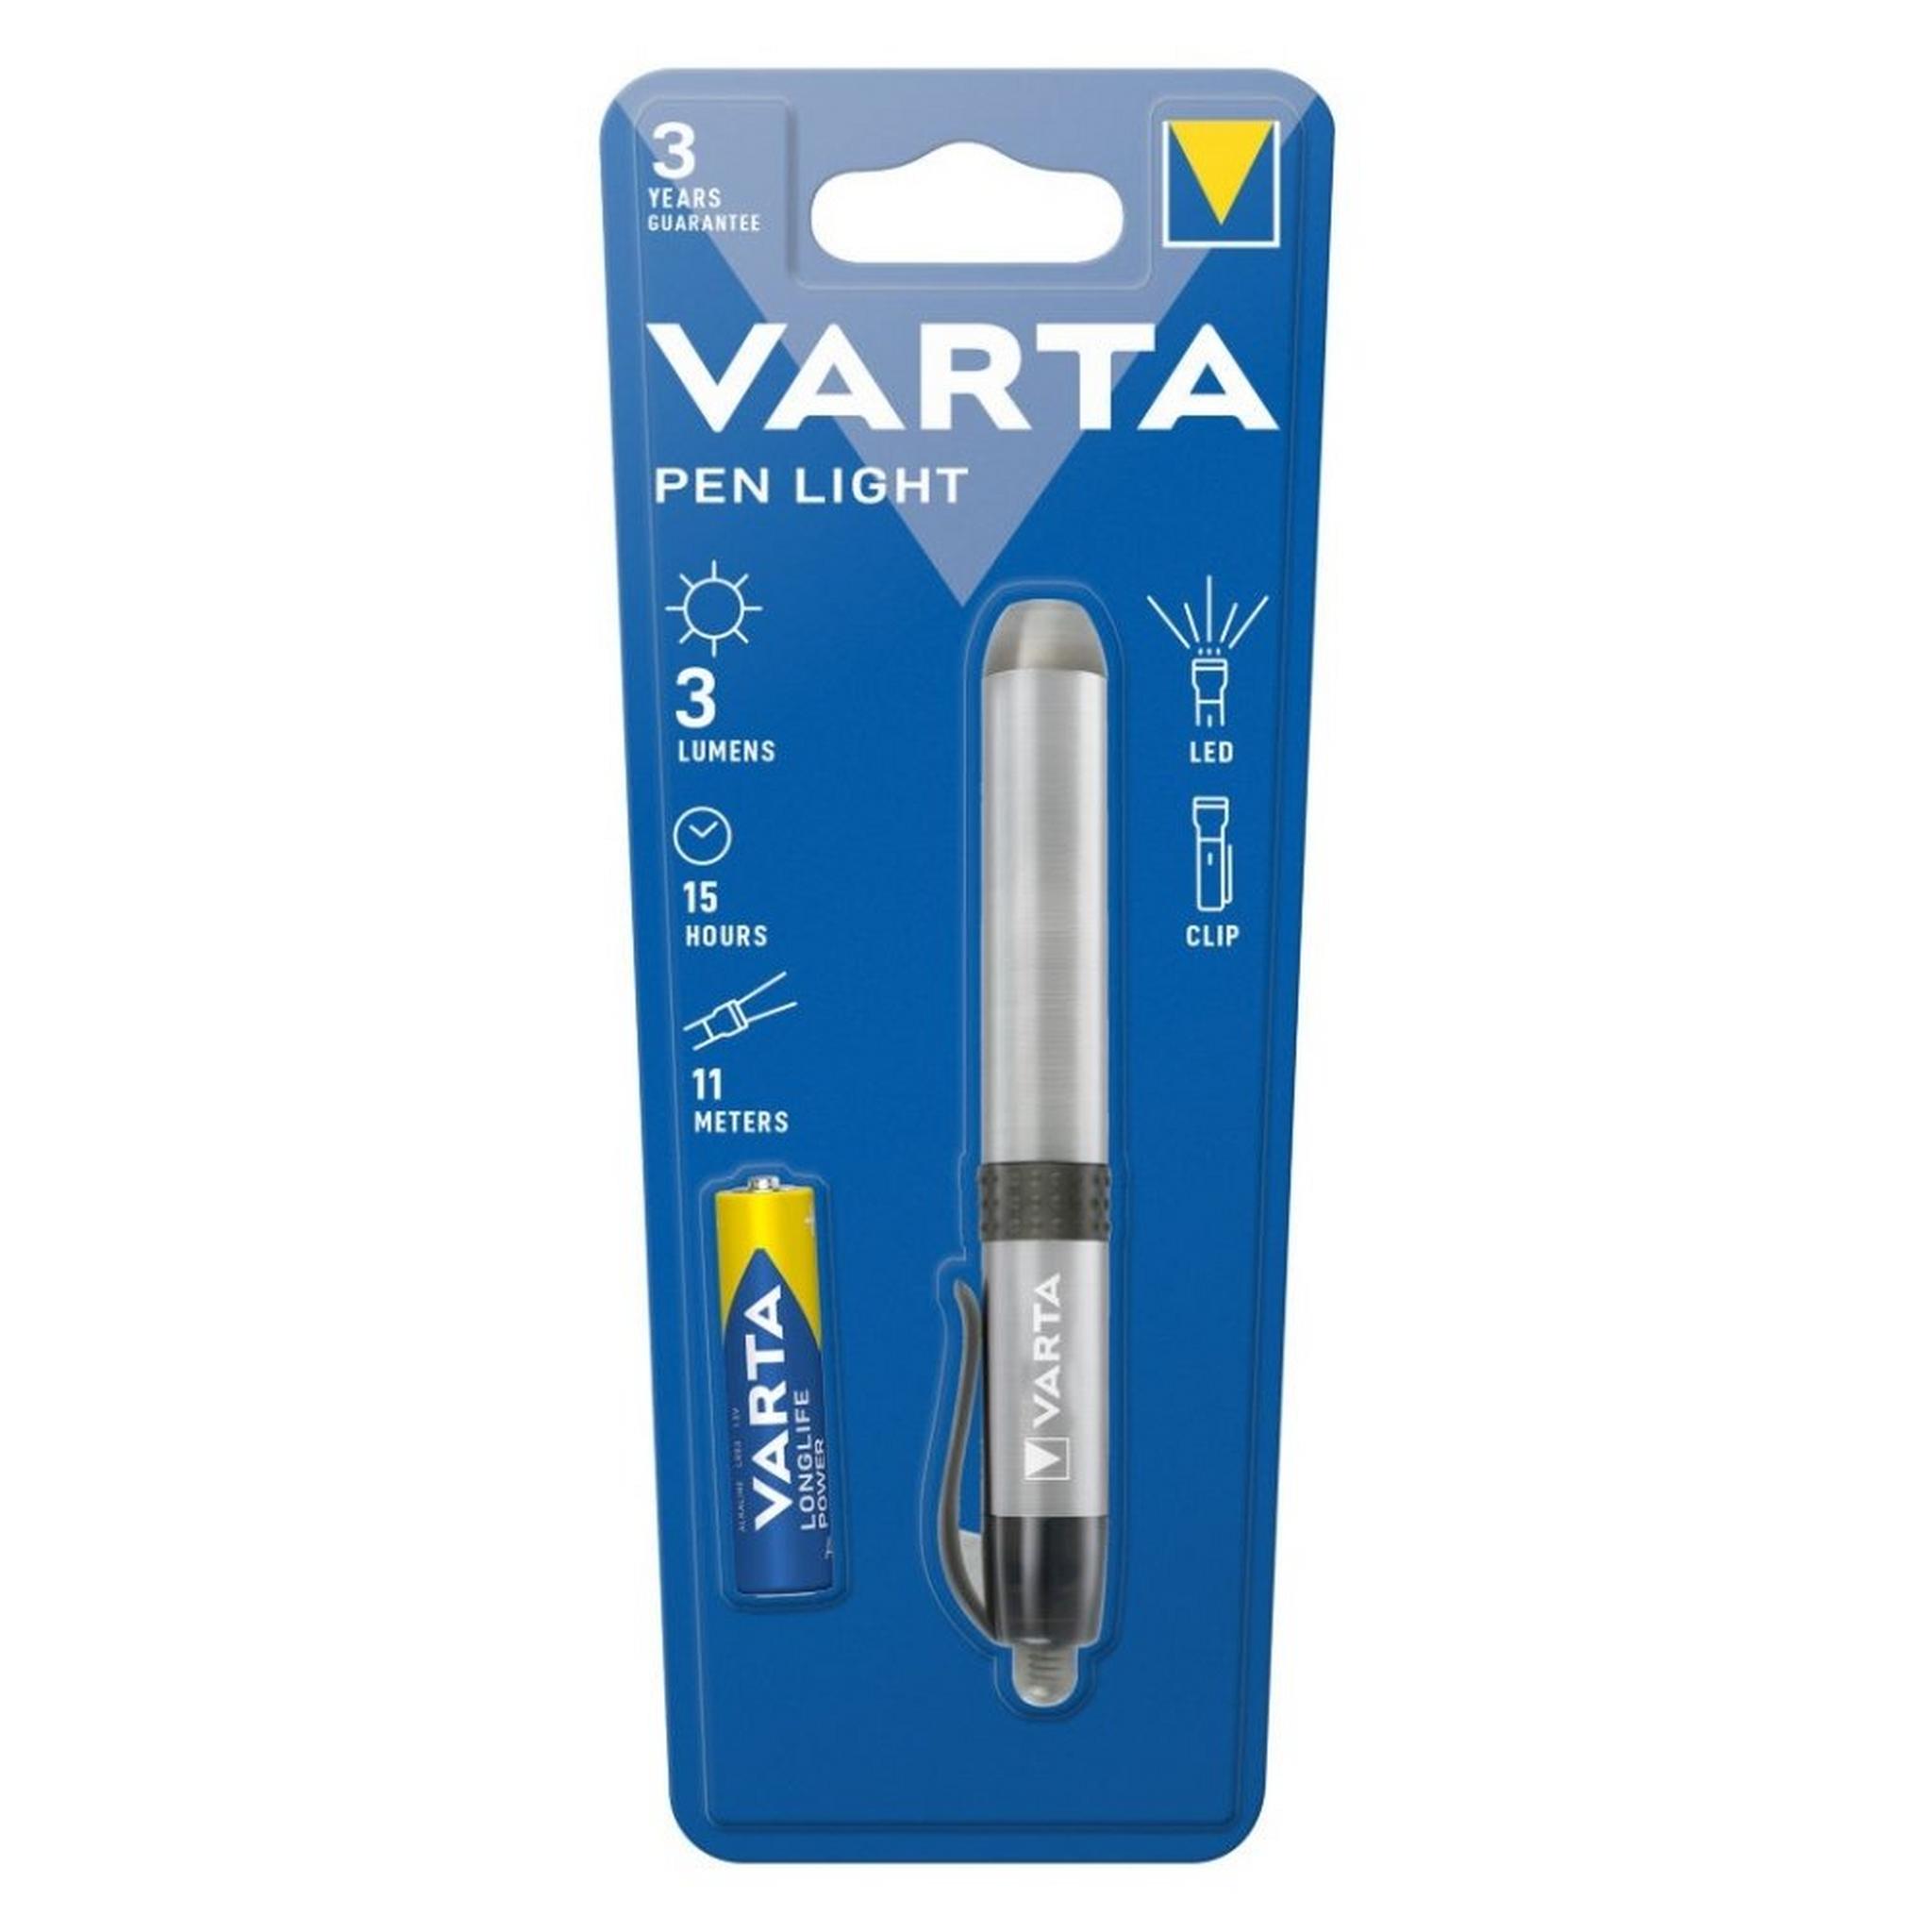 Varta Pen light (16611101421)